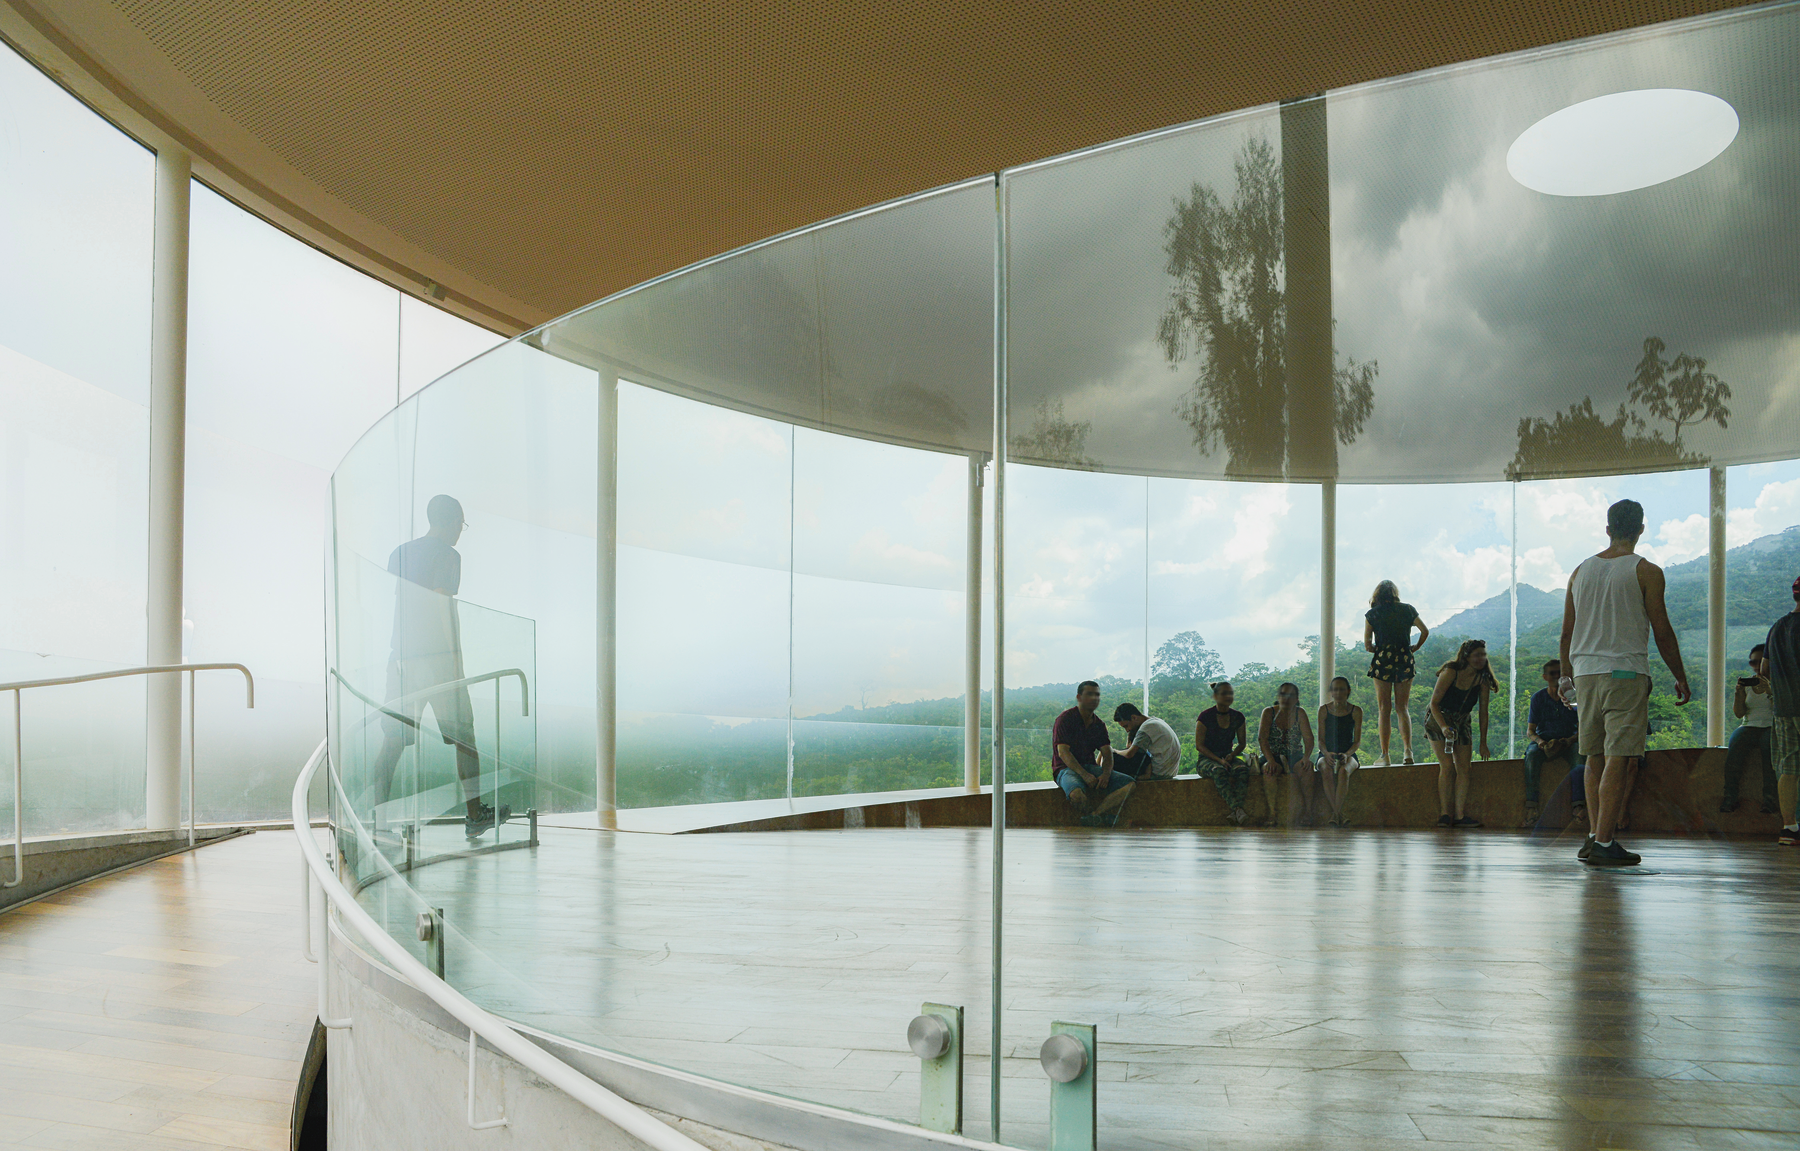 Fotografia. Interior de um pavilhão circular com paredes de vidro e vegetação na área externa. Dentro dele, algumas pessoas estão sentadas, e outras estão em pé.